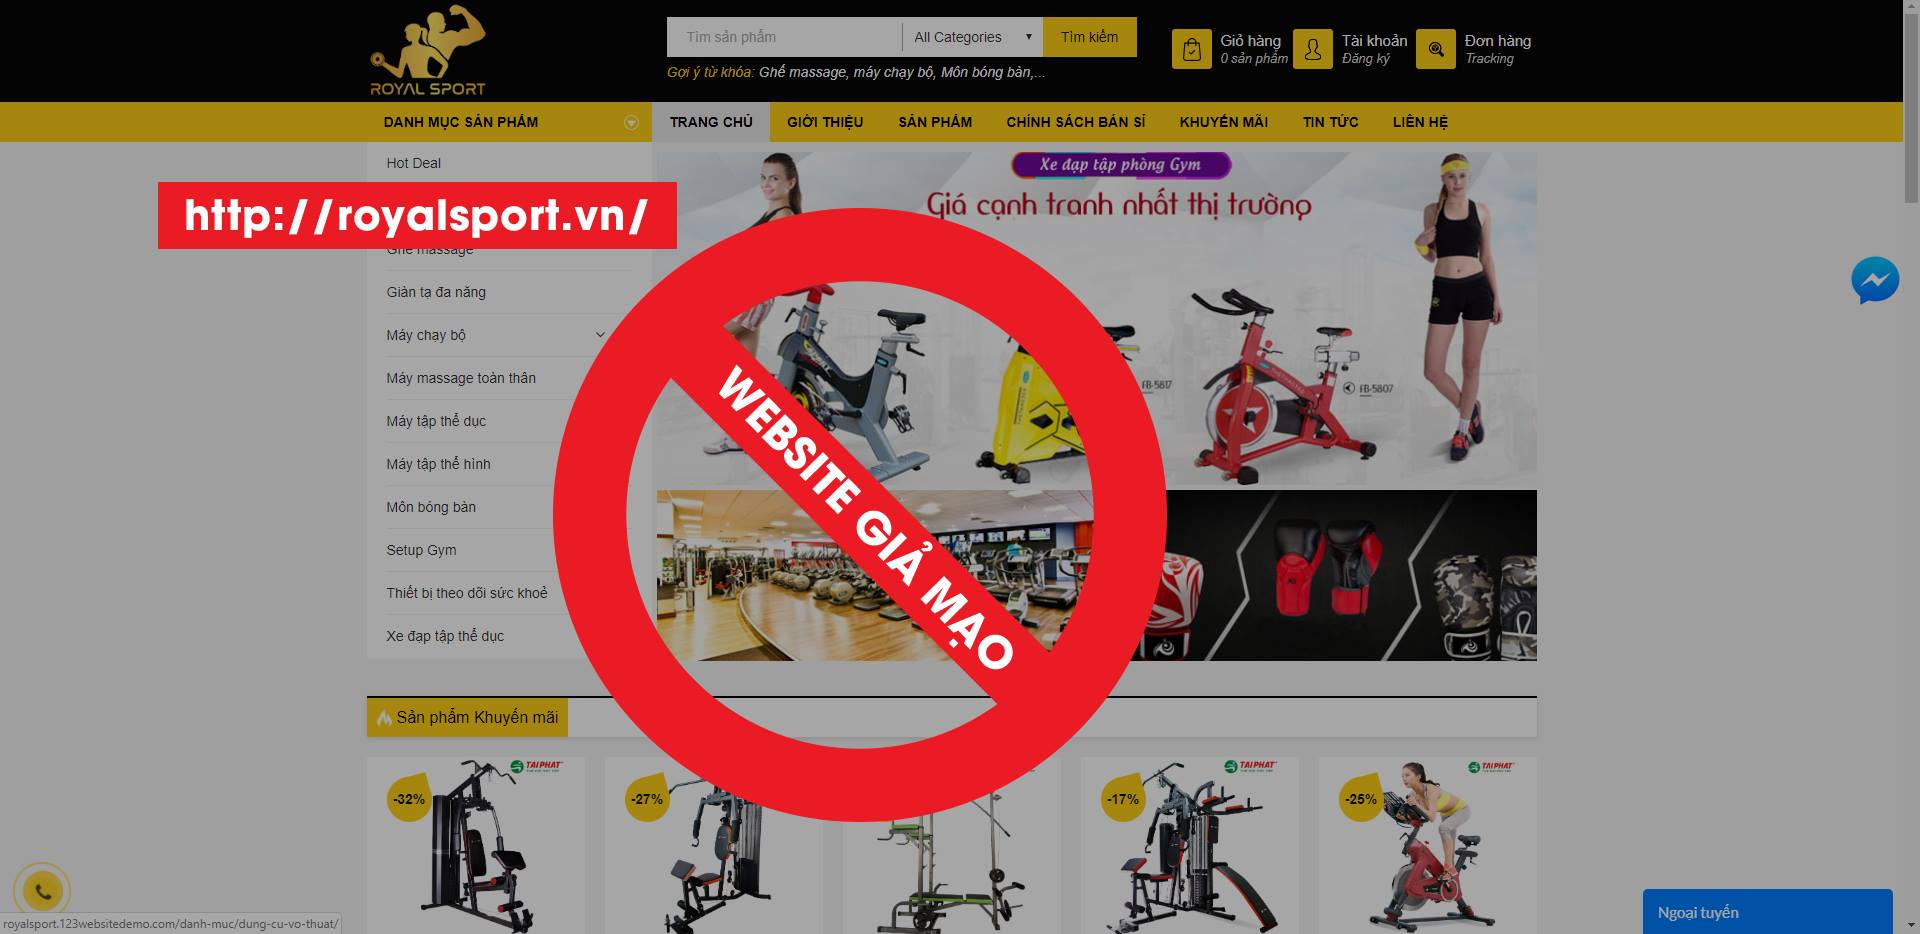 Website giả mạo không thuộc sở hữu của Tài Phát Sport khách hàng nên cảnh giác.